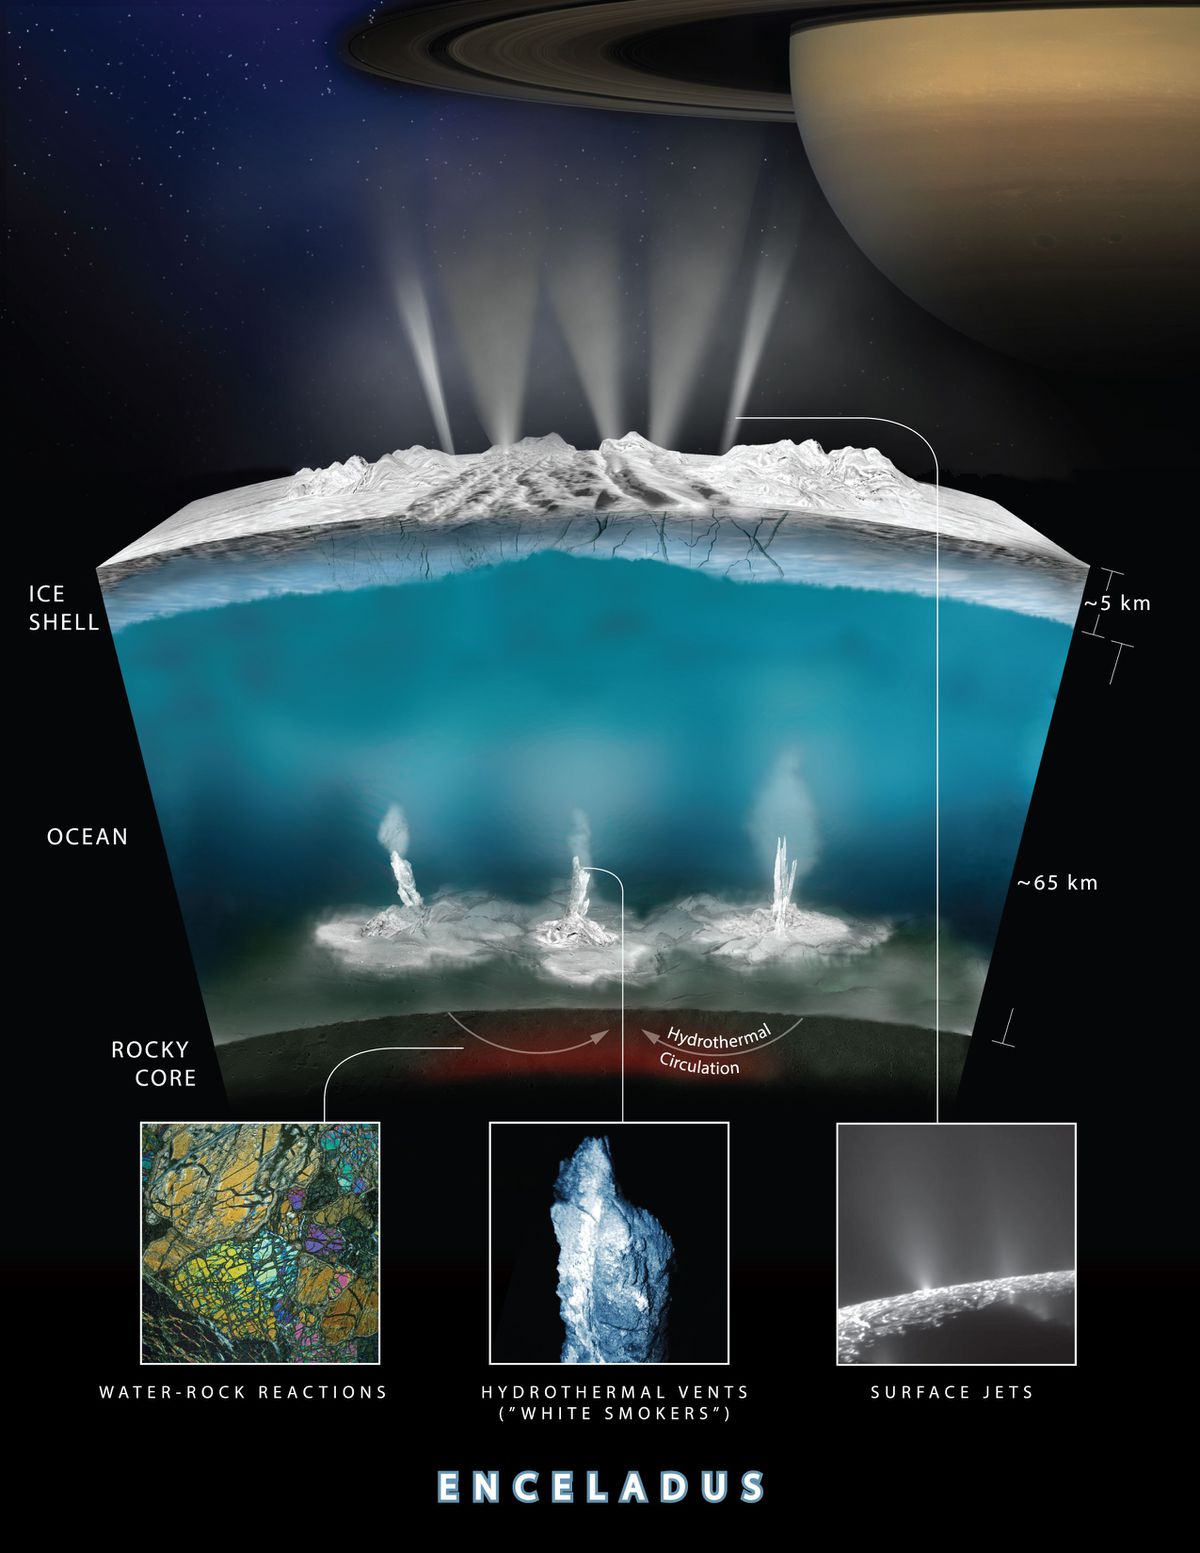 Takto si vědci podílející se na misi Cassini představují, že by mohlo vypadat prostředí Enceladu.